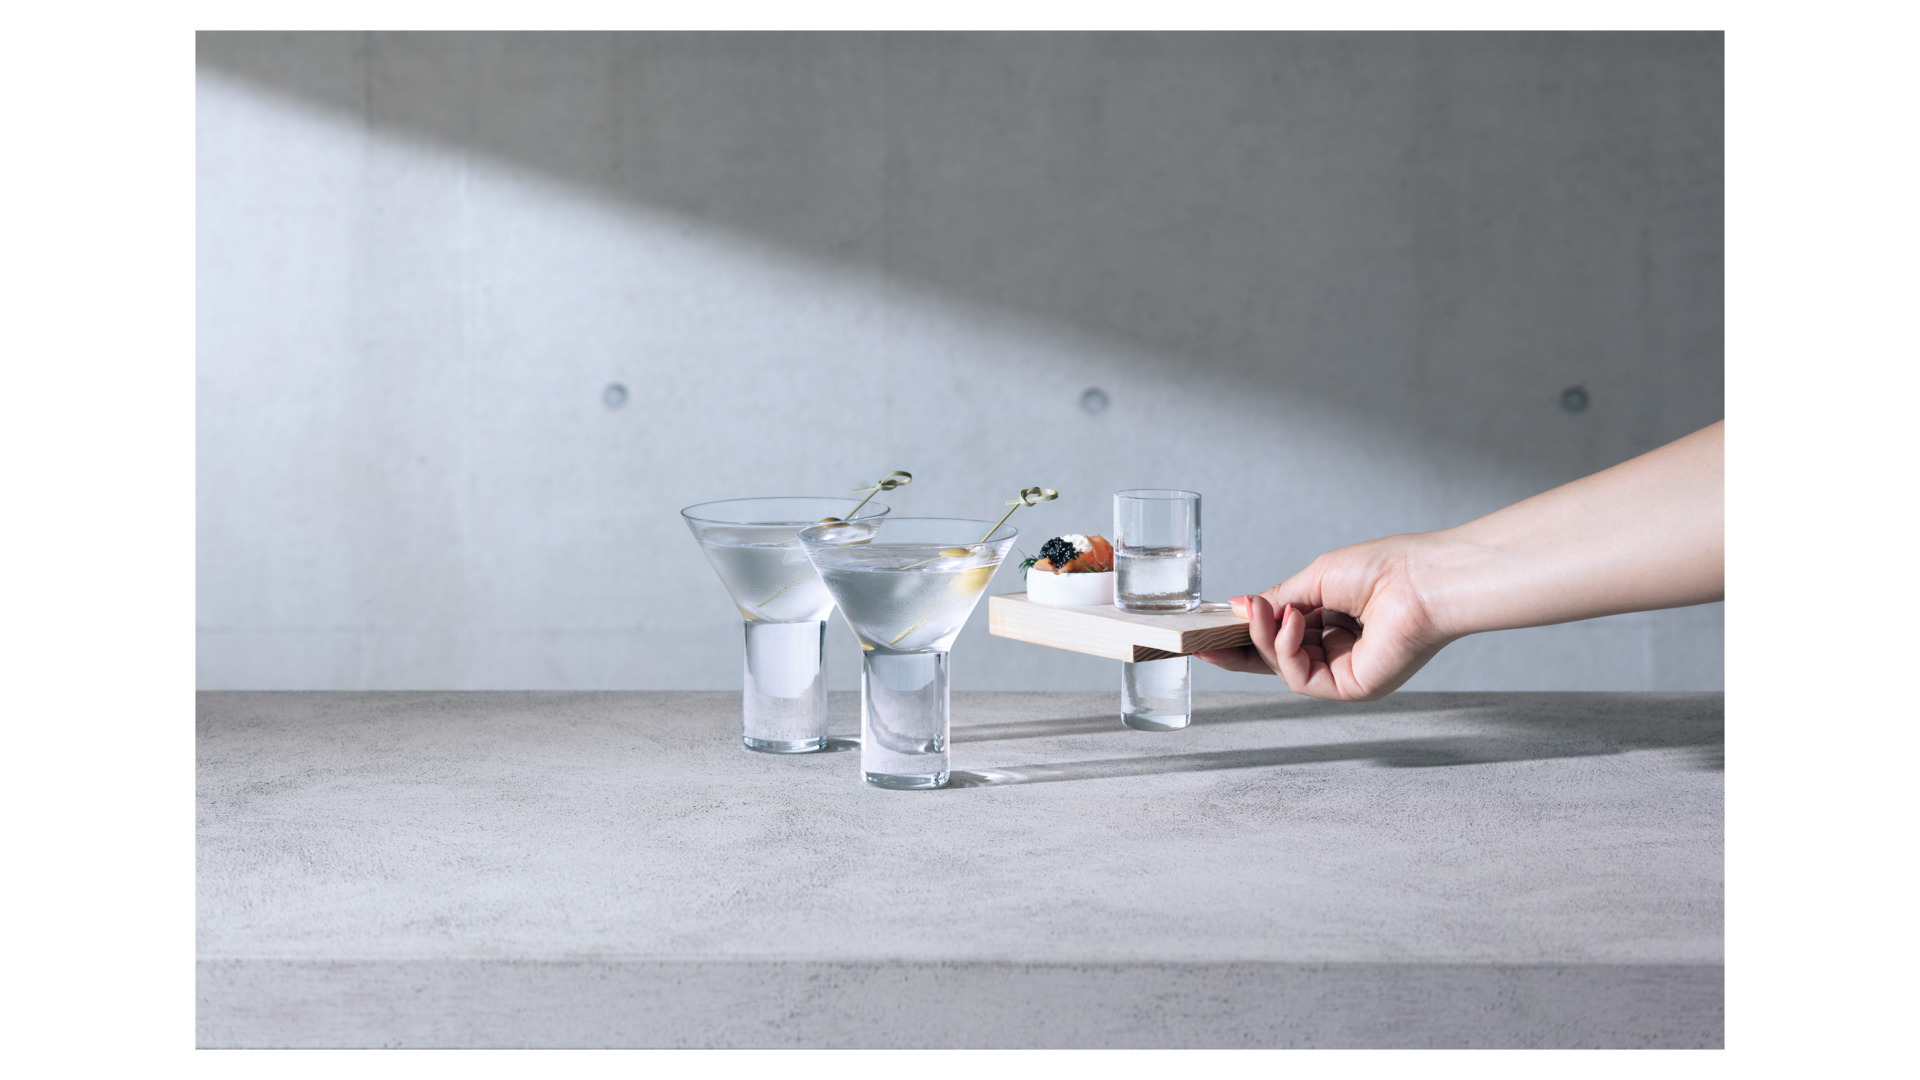 Набор сервировочный  LSA International Vodka, стекло